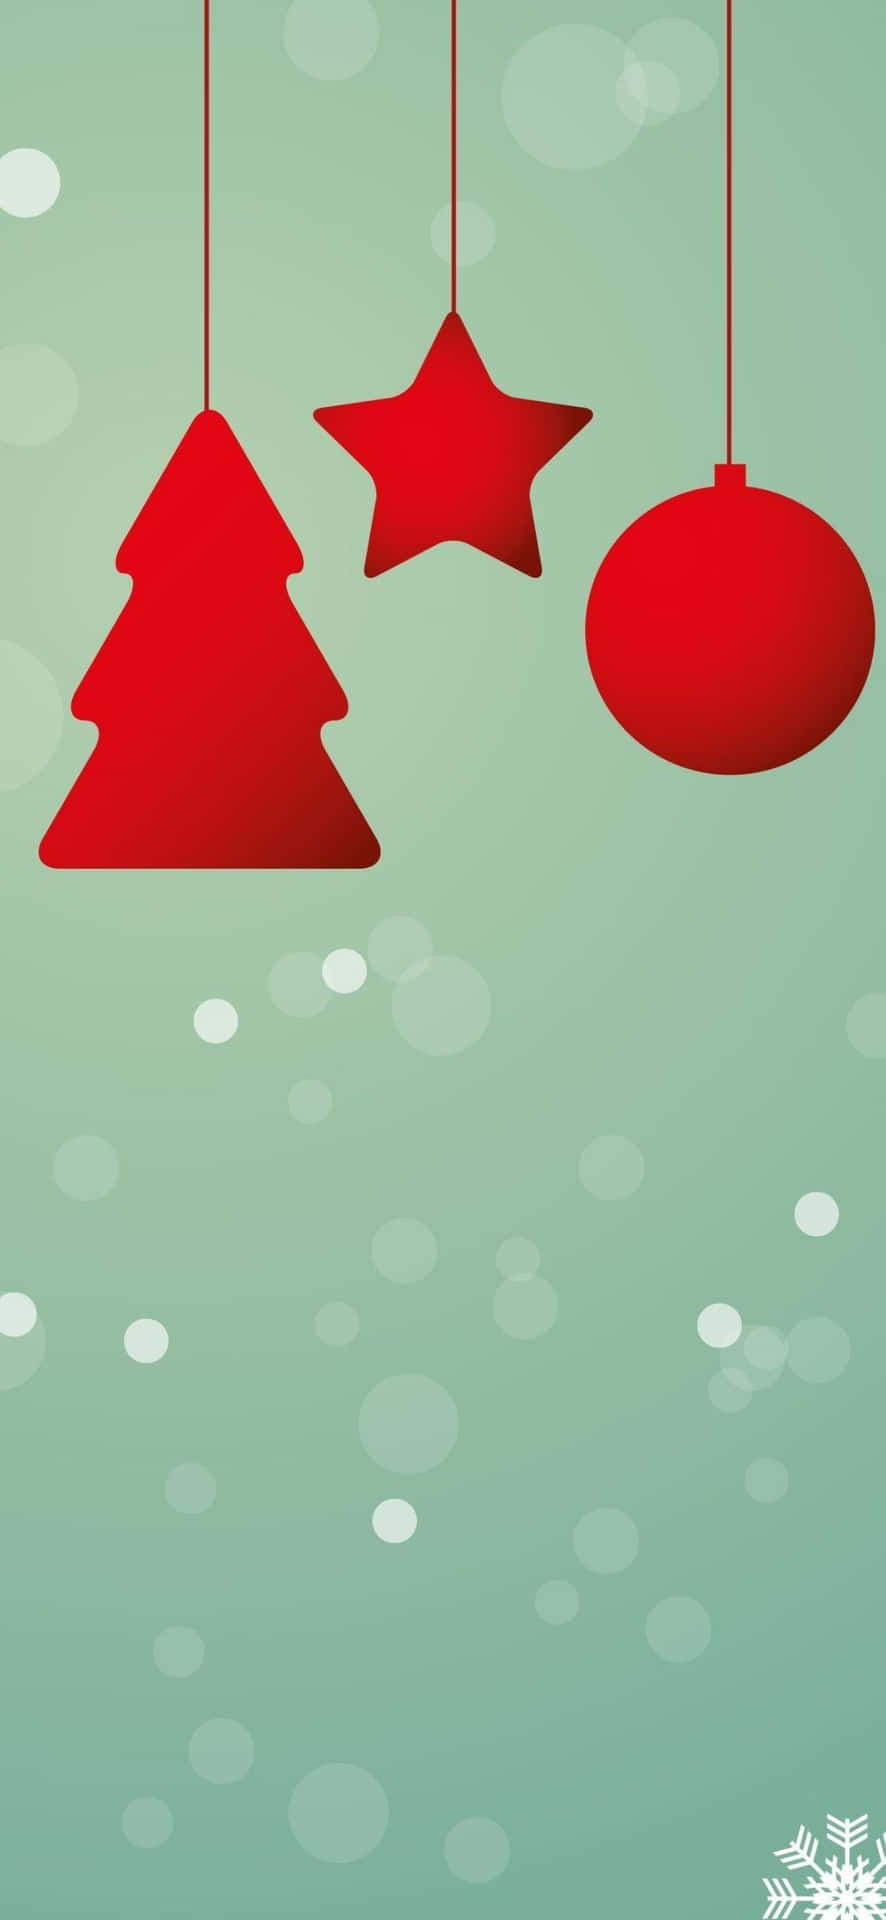 Verwöhnensie Ihr Iphone In Dieser Feiertagssaison Mit Diesem Festlichen Weihnachts-hintergrund.